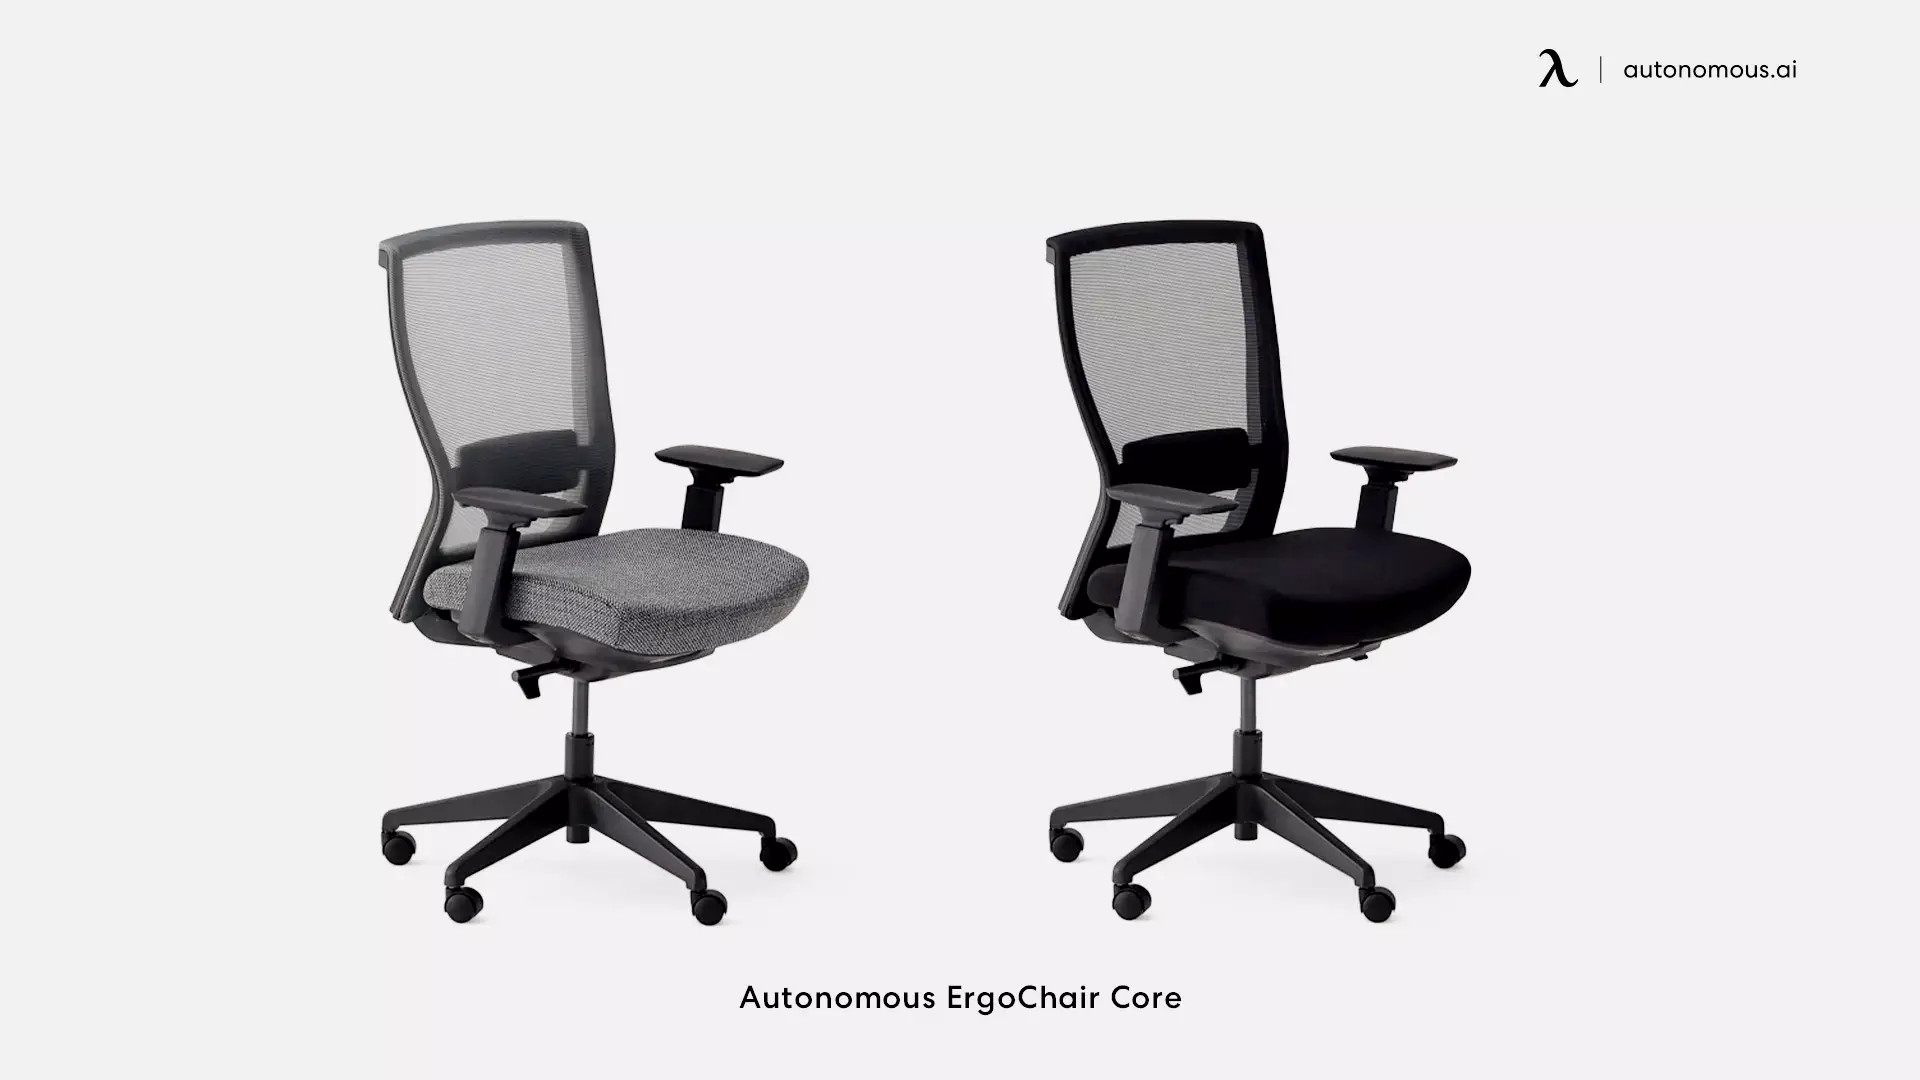 ErgoChair Core high back office chair with lumbar support